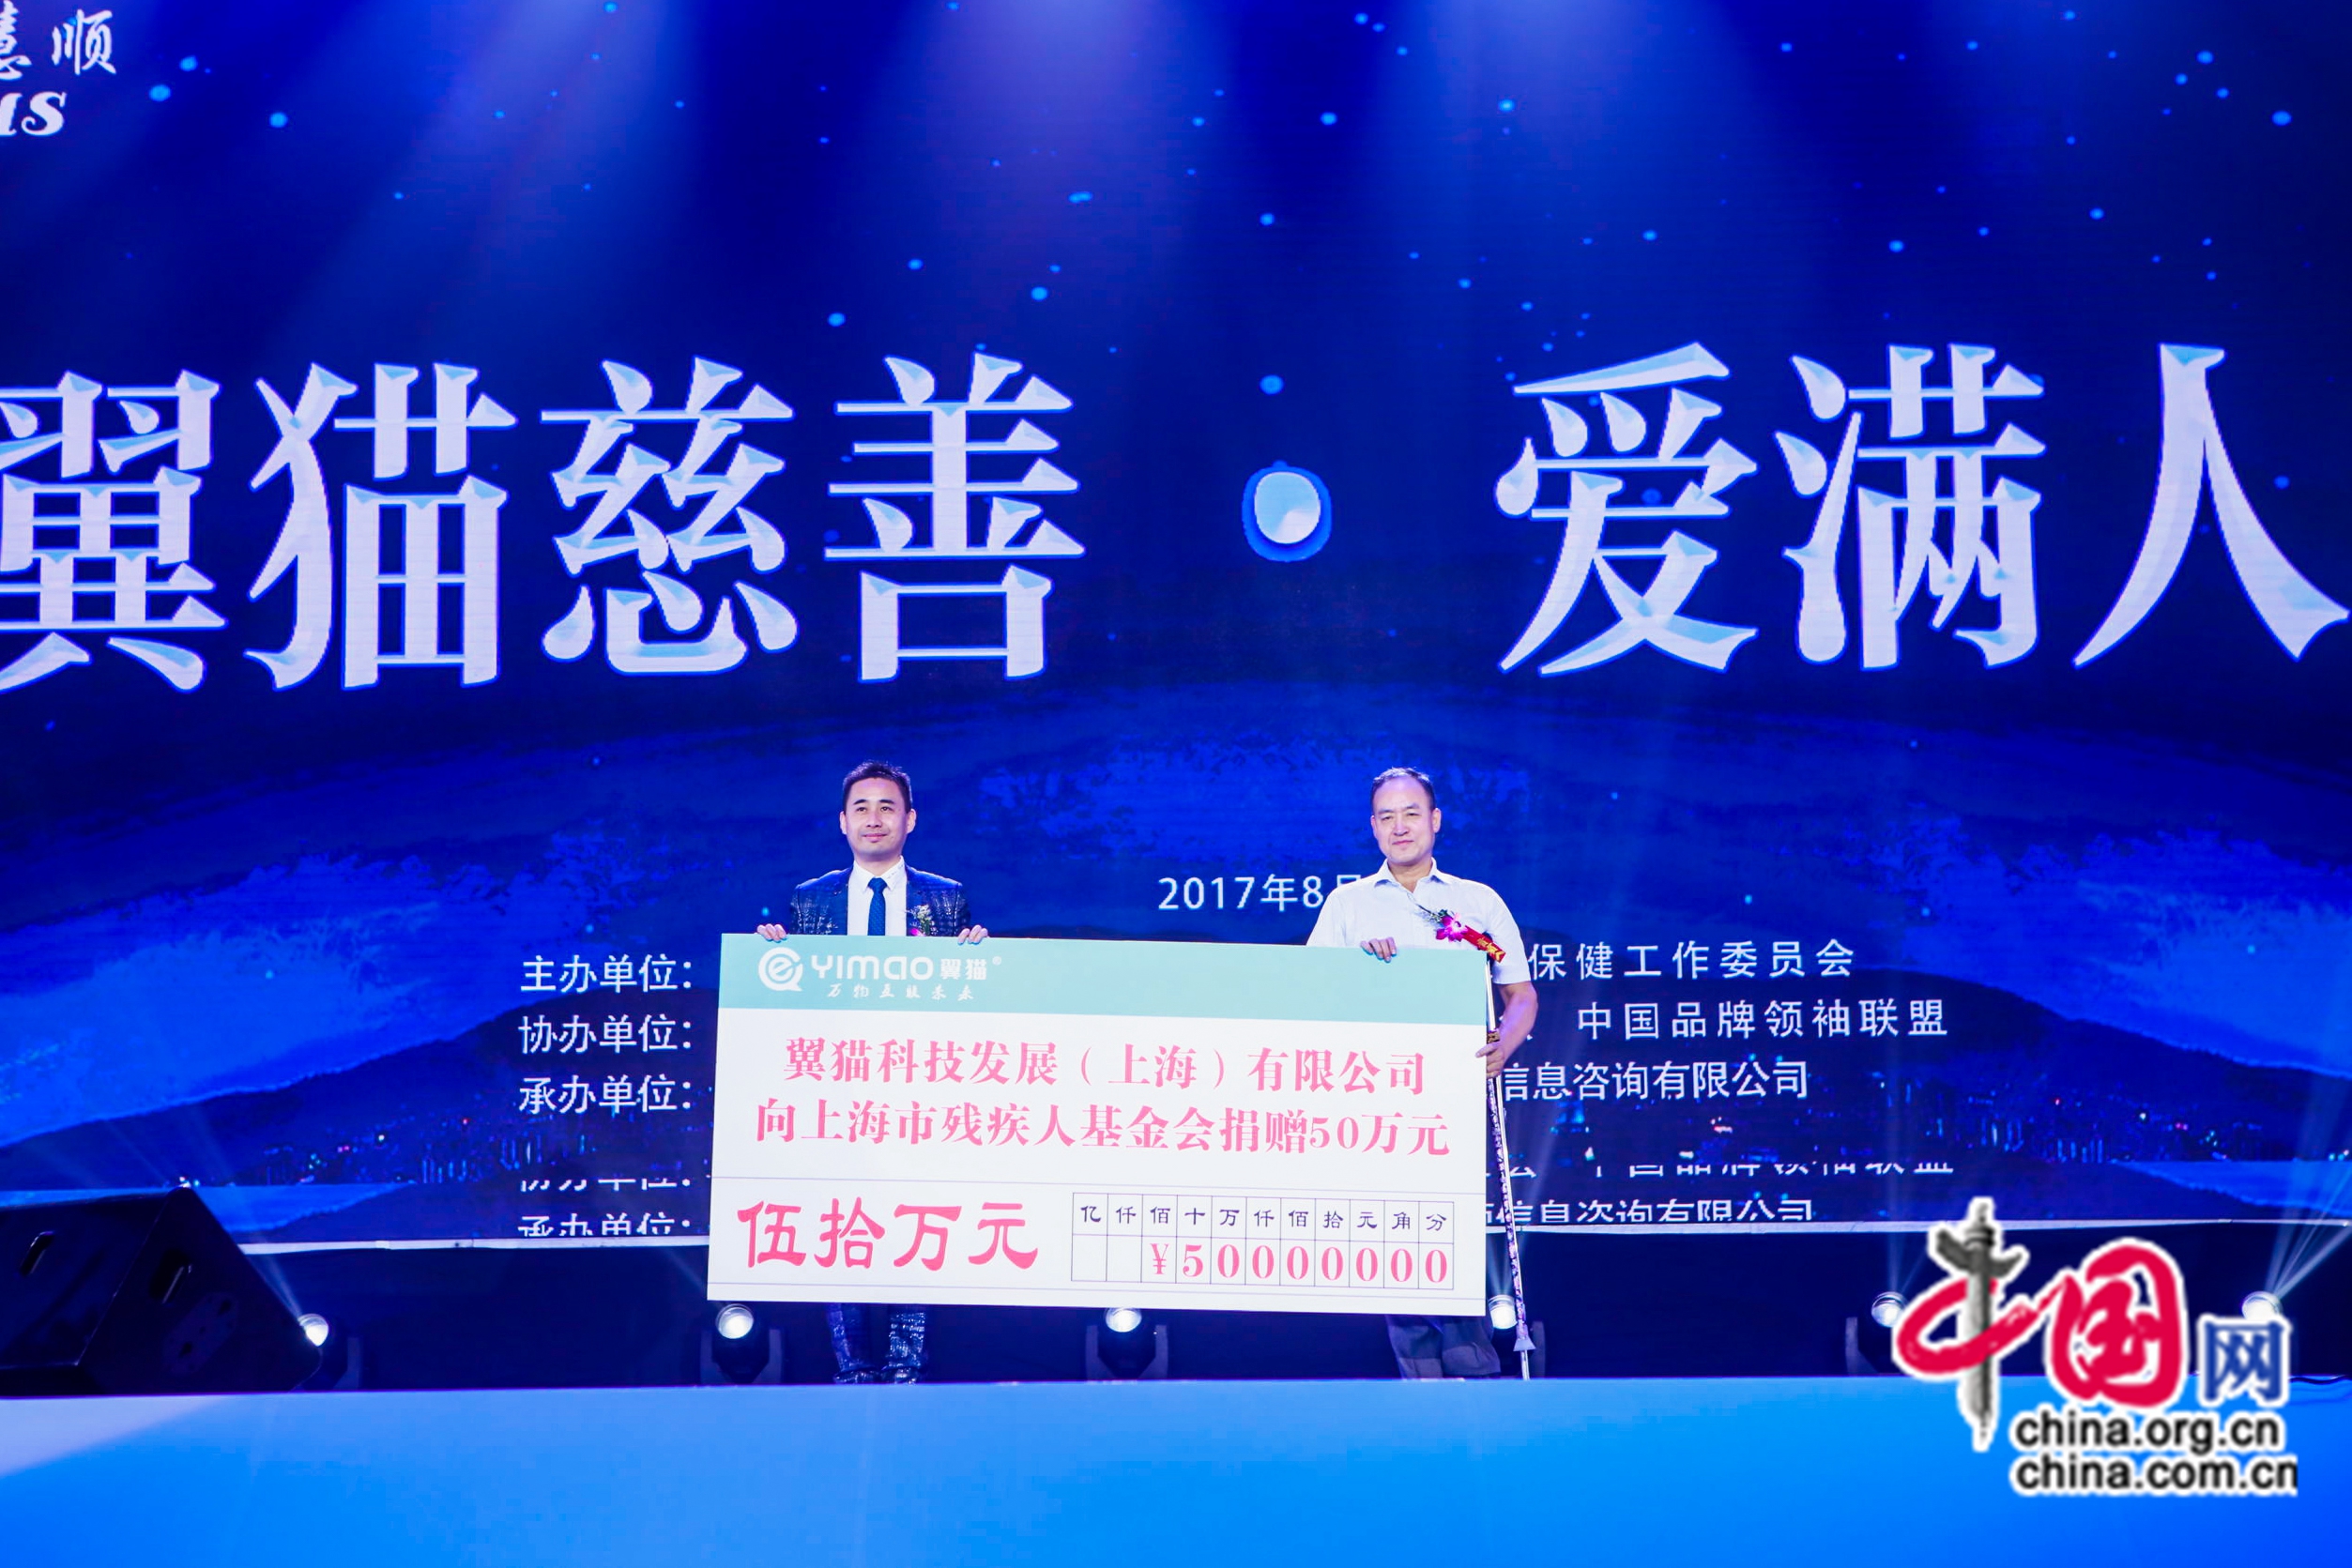 萬人唱響全民慈善 翼貓科技感動中國